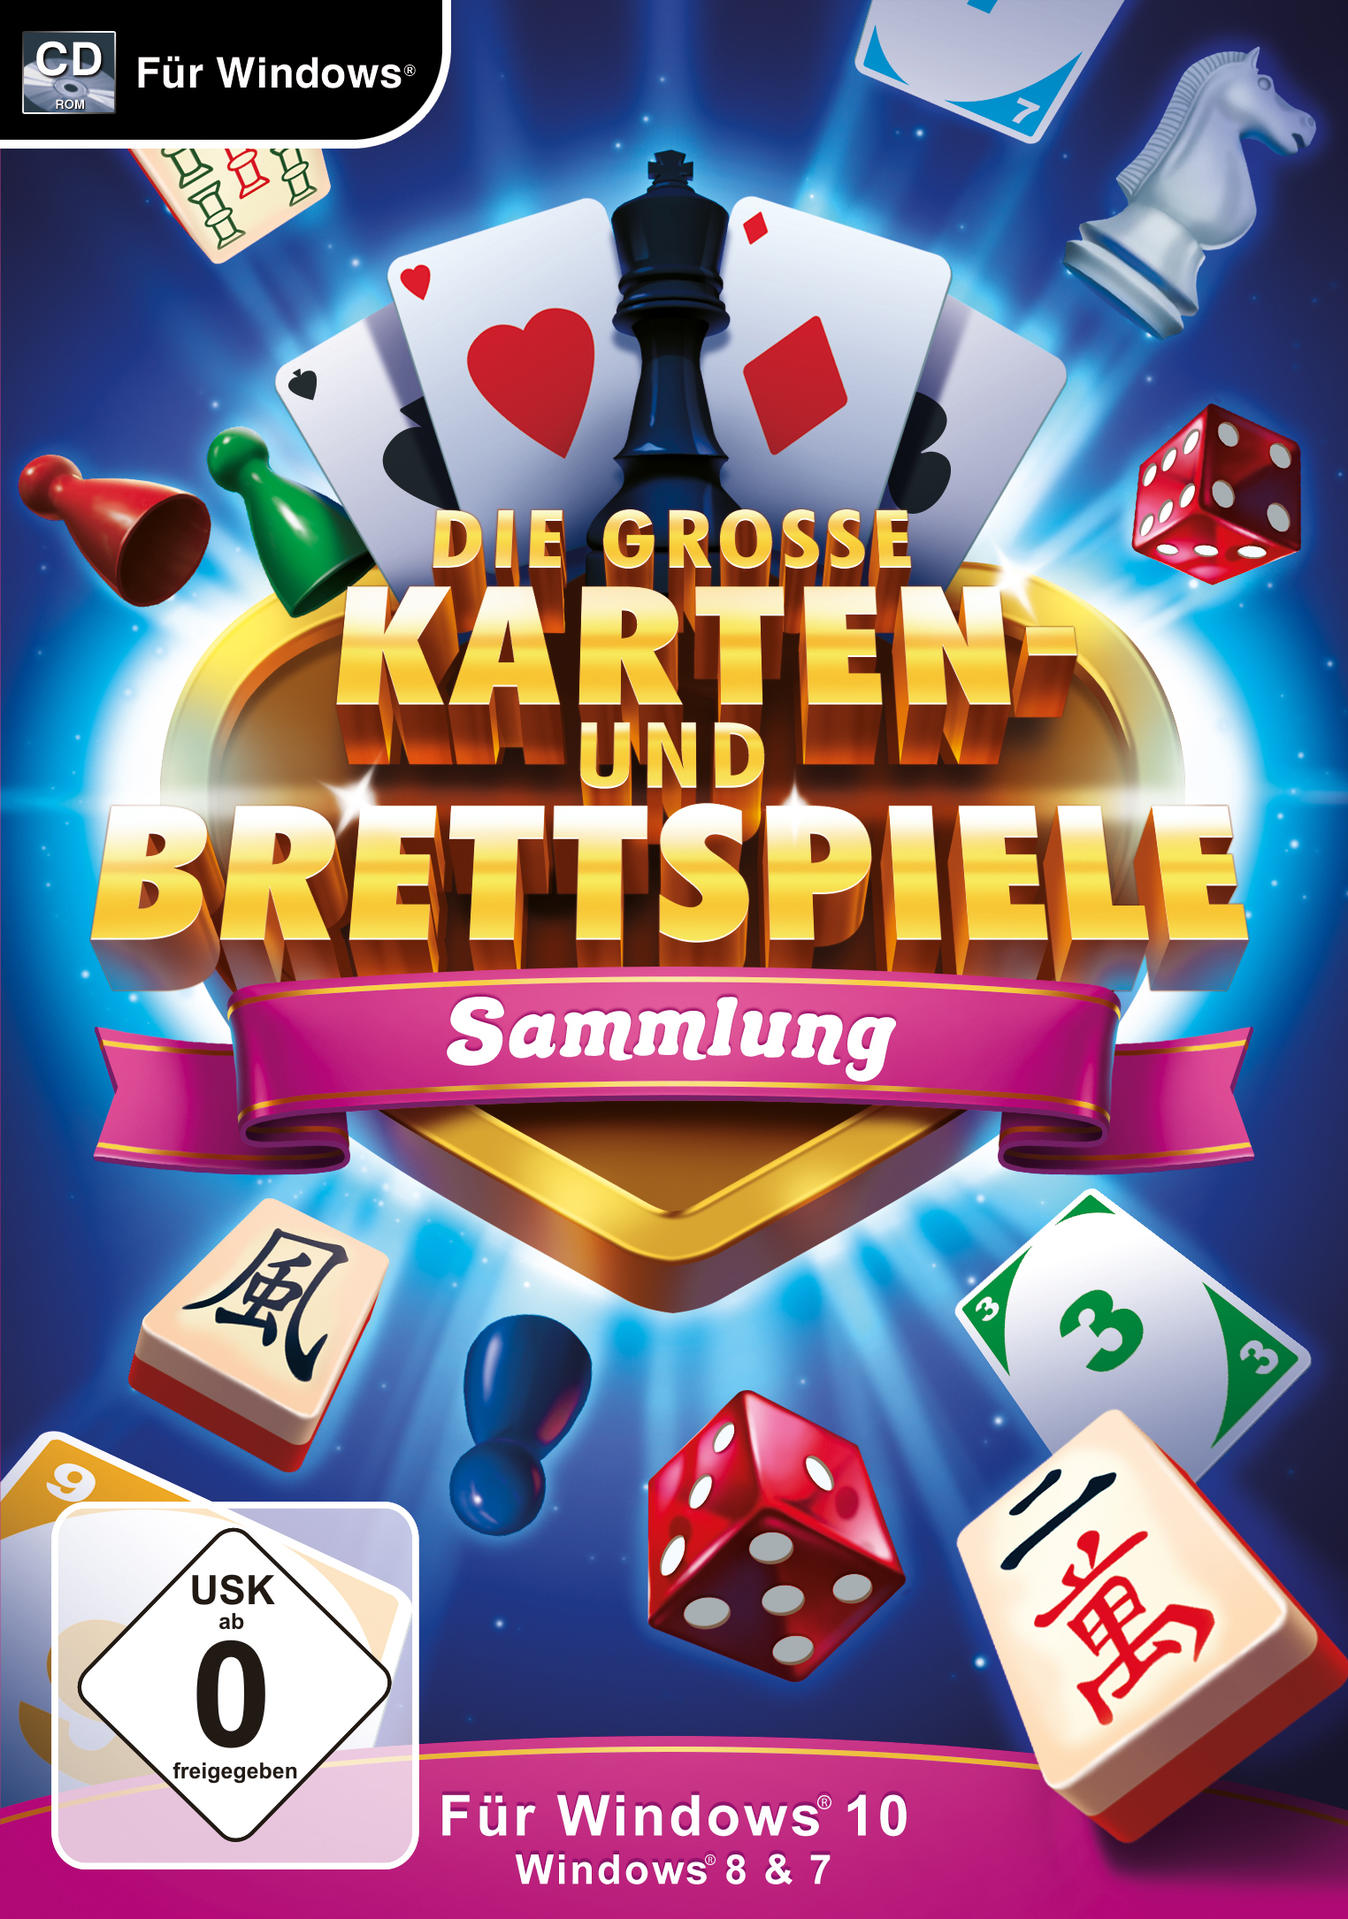 Die Grosse Karten Und Brettspielesammlung Win.1 [PC] - F